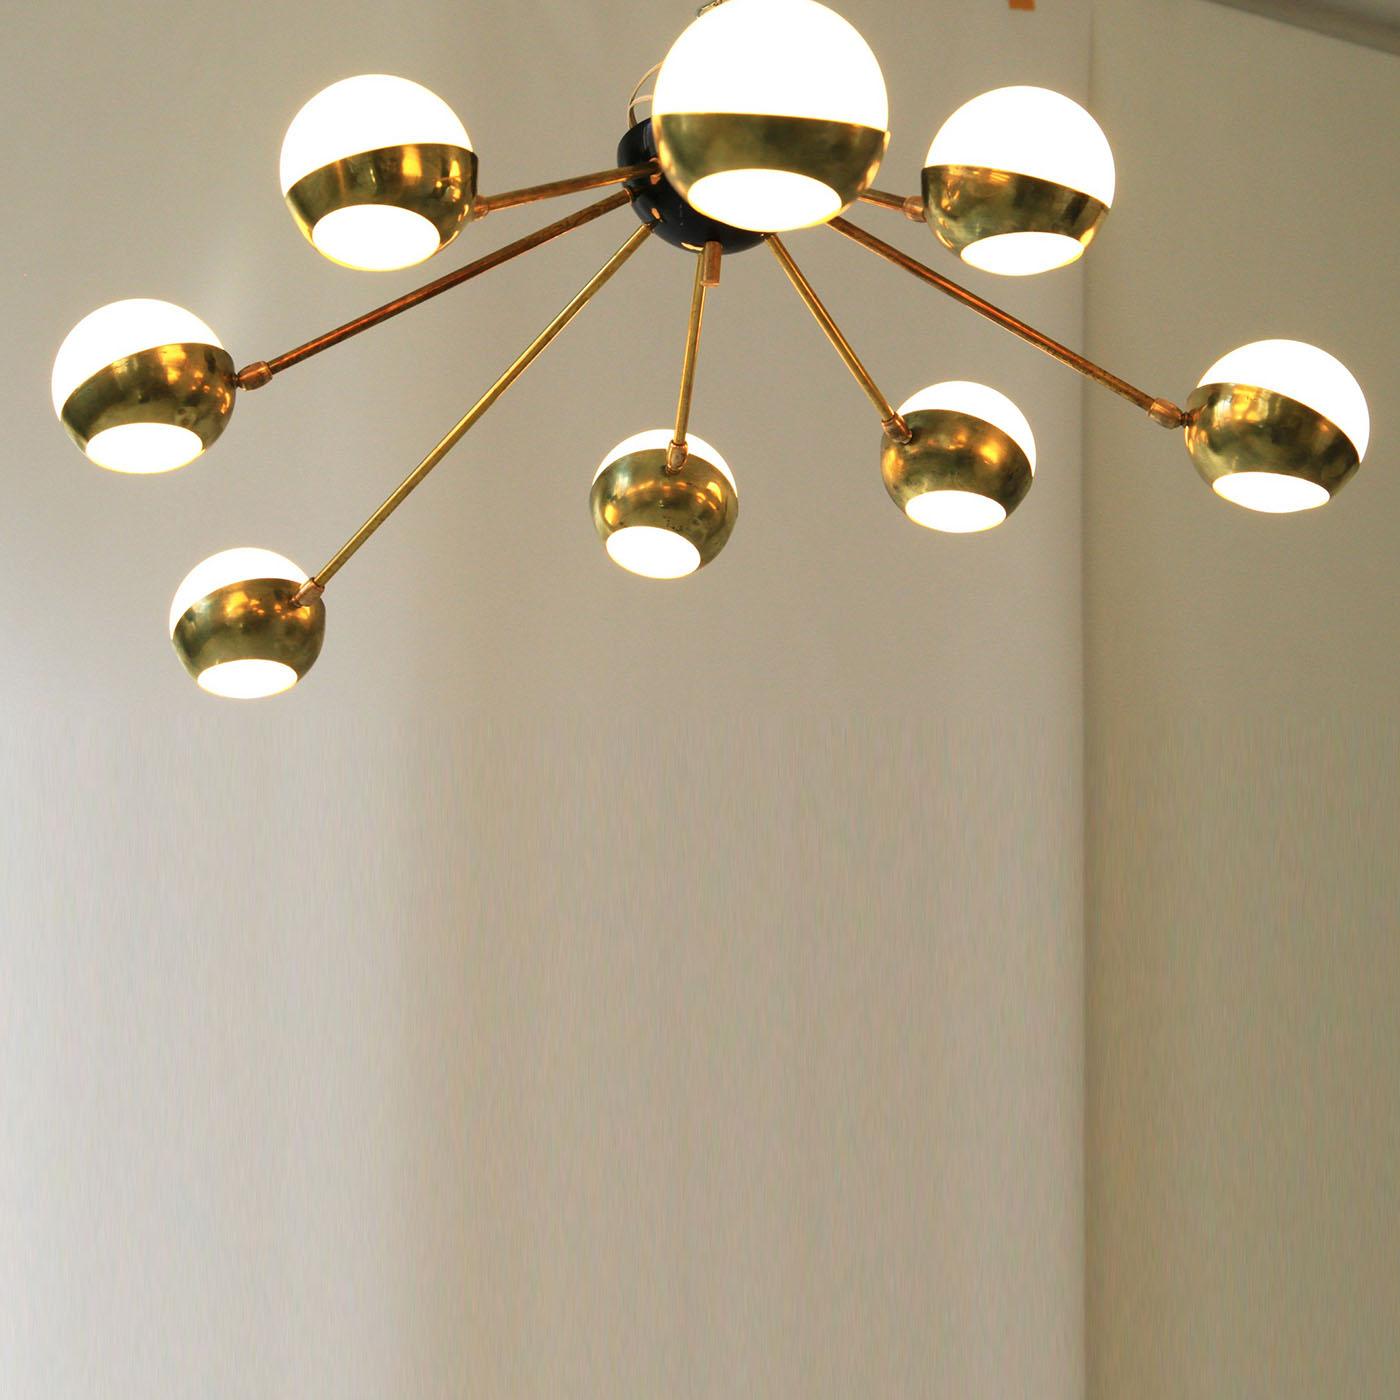 Italian Nido 8-Light Ceiling Lamp For Sale